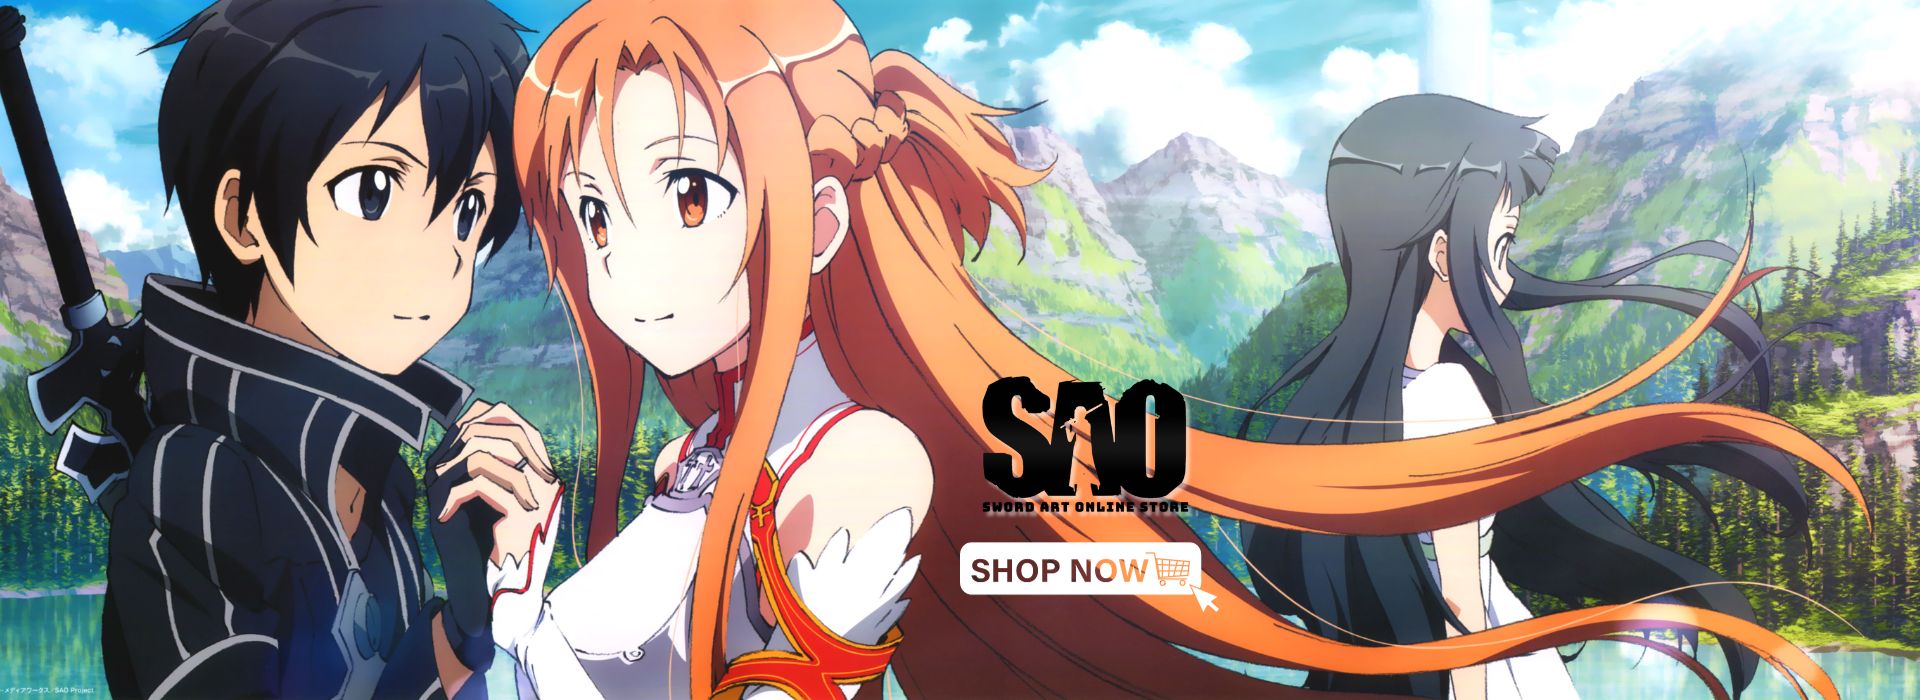 Sword Art Online Store Banner